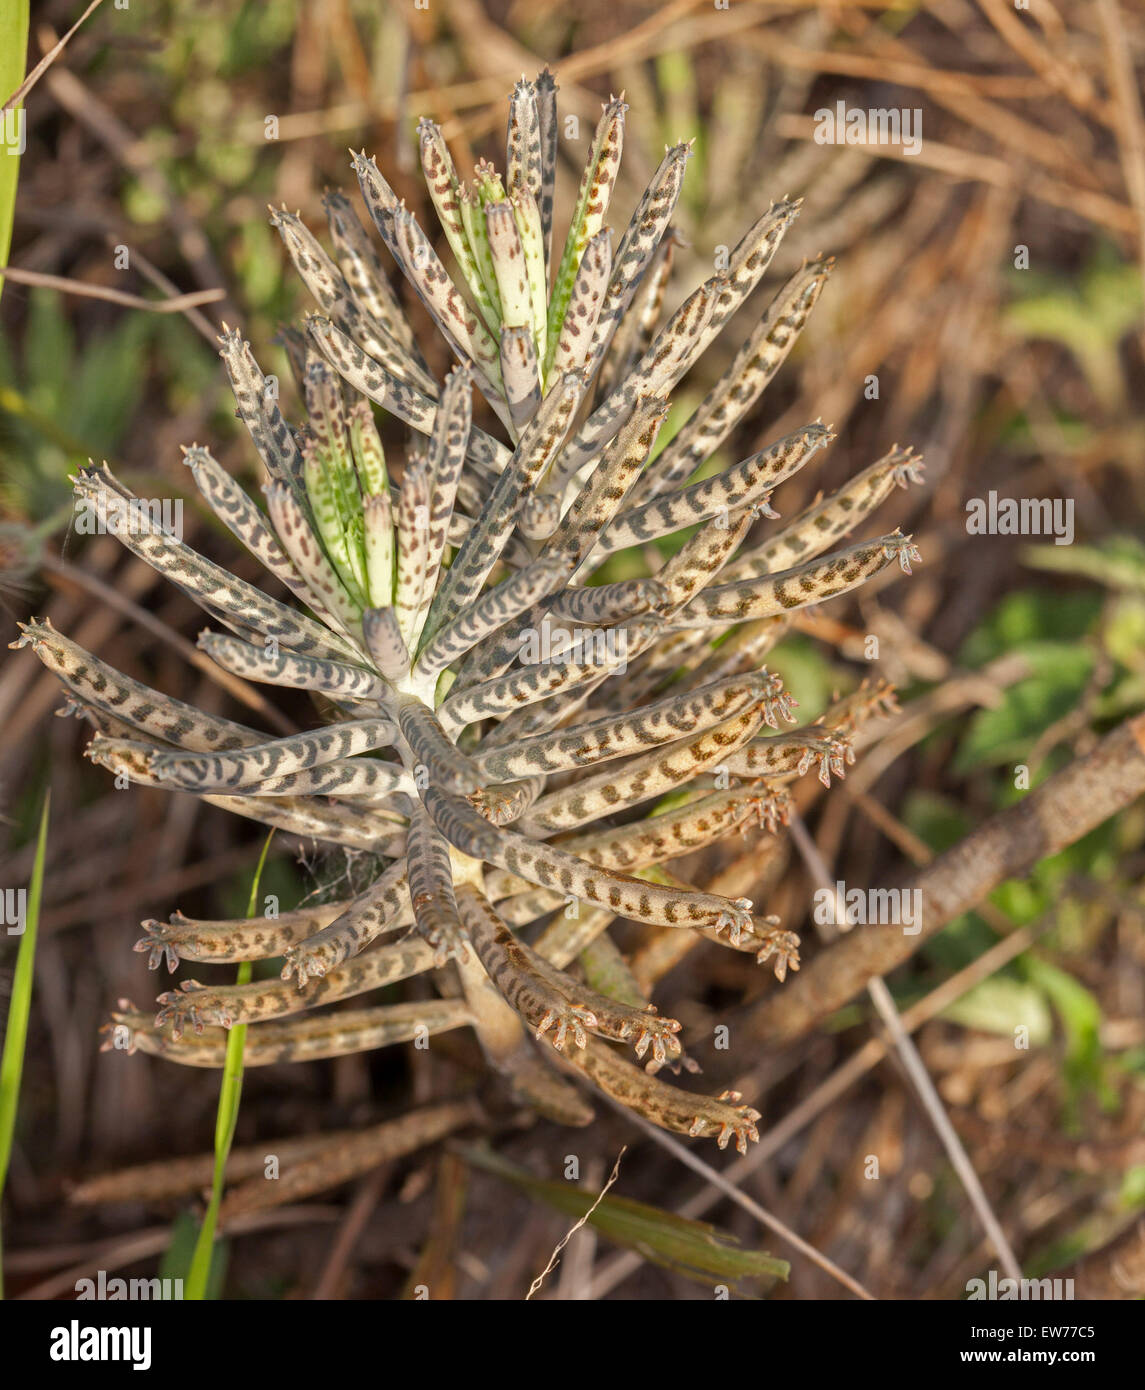 Hojas grises de la madre de millones de plantas suculentas Bryophyllum / Calanchoe delagoense, una de las especies de malezas en Australia Foto de stock